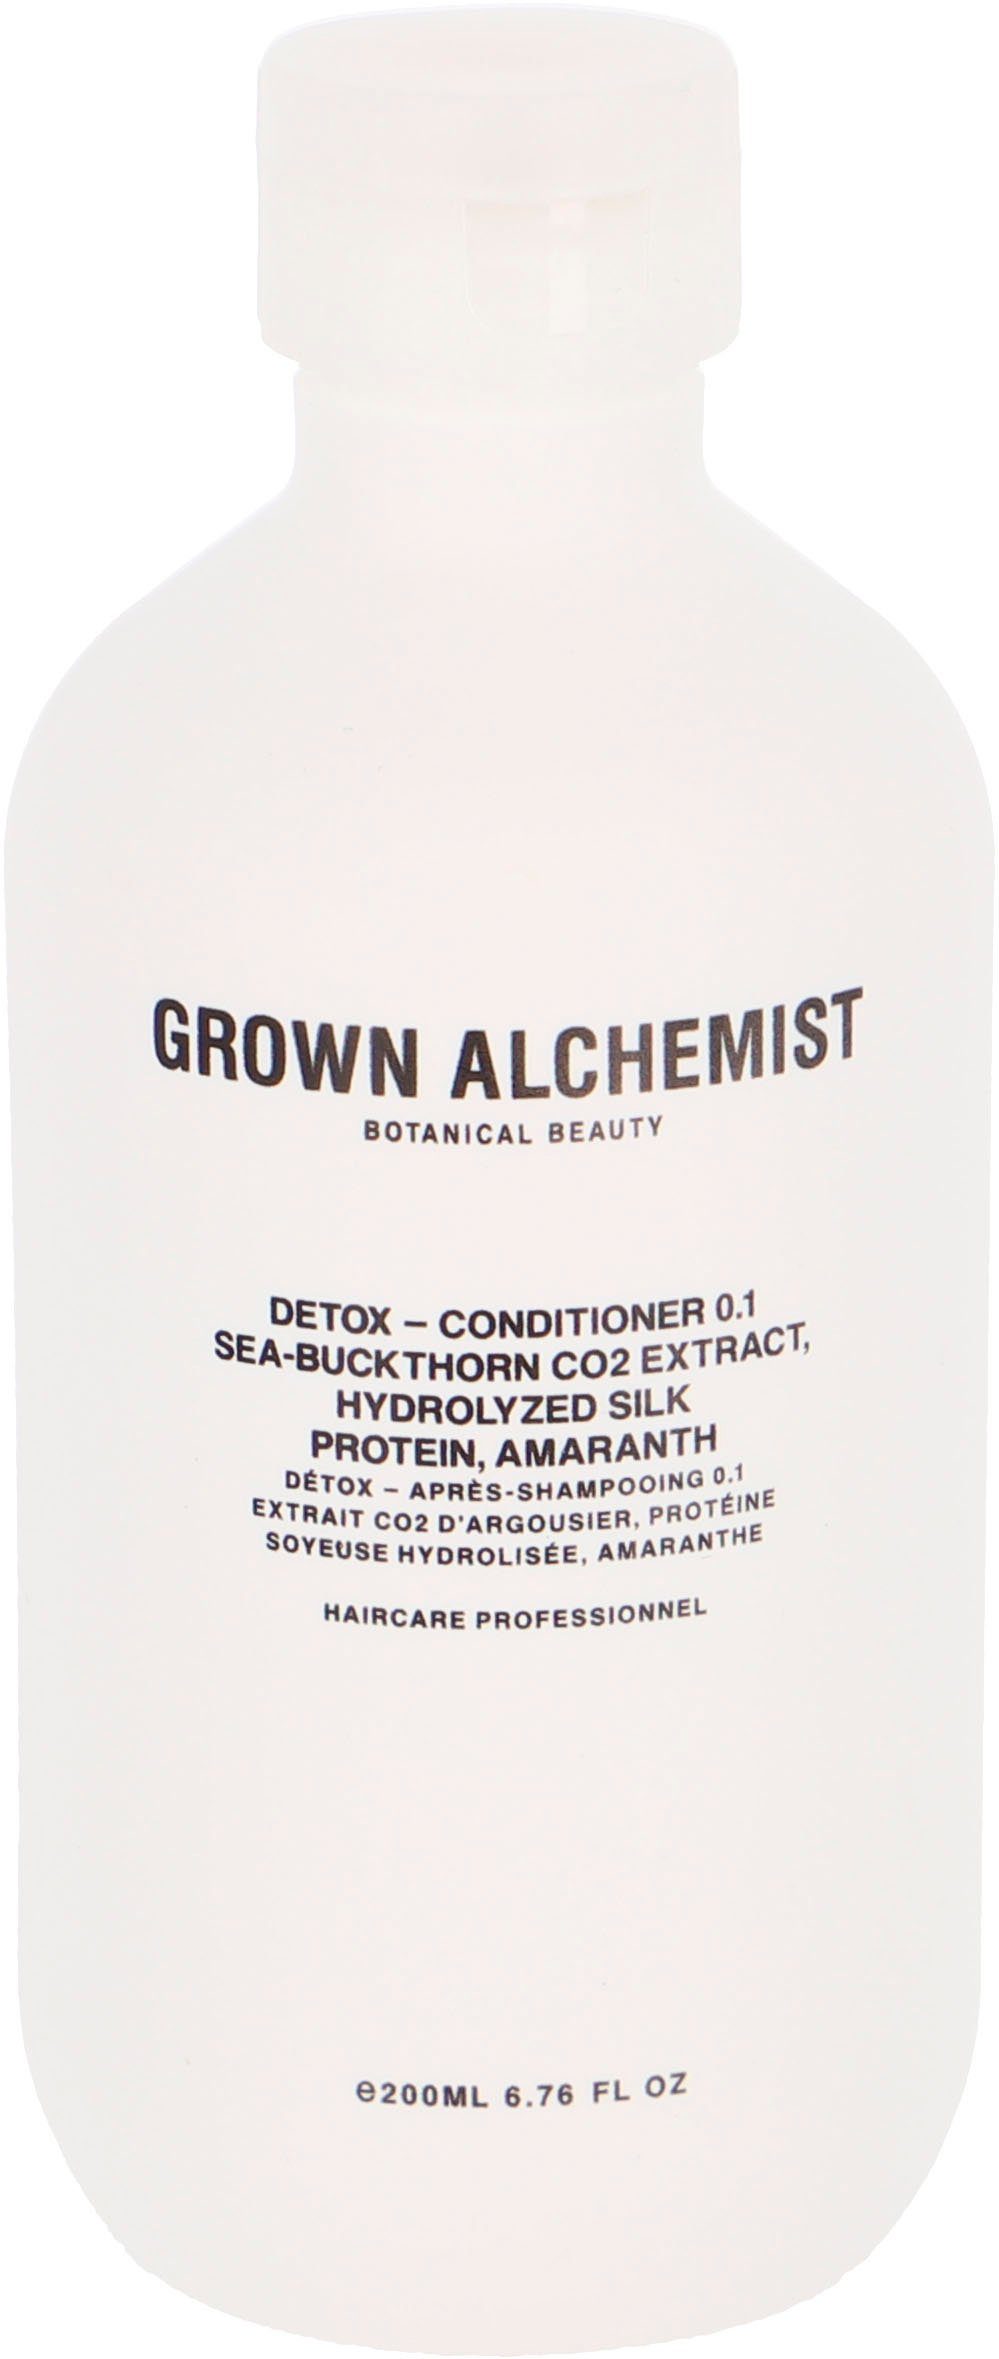 Höchste Qualität GROWN ALCHEMIST Haarspülung Detox Silk Protein, Sea-Buckthorn 0.1, CO2 Hydrolyzed - Amaranth Conditioner Extract, 500 ml